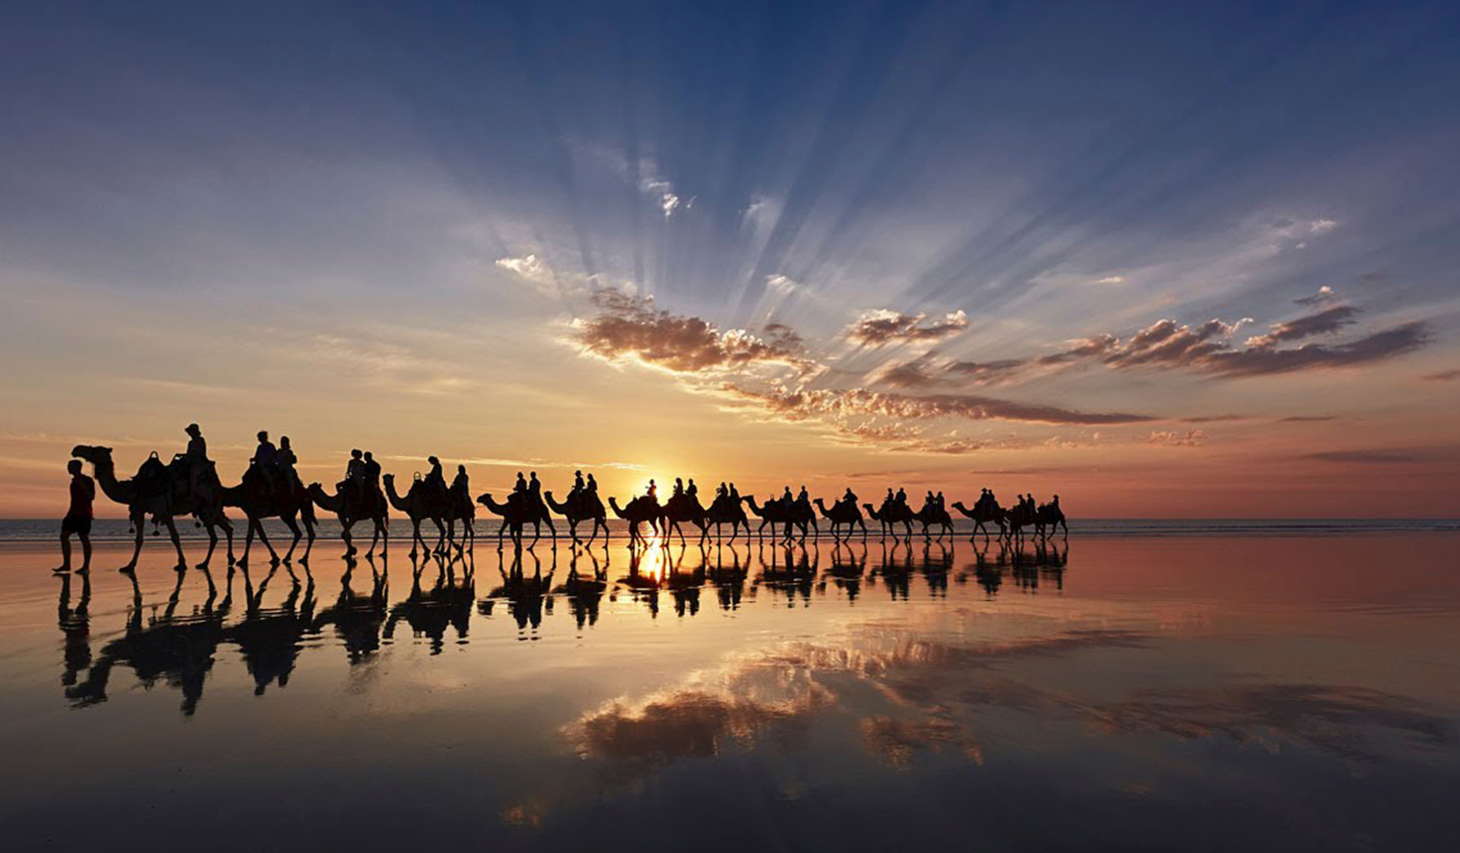 24 сентября 2015. Международный день караванщика 24 сентября. Верблюды в пустыне на закате. Открытка с днем караванщика.